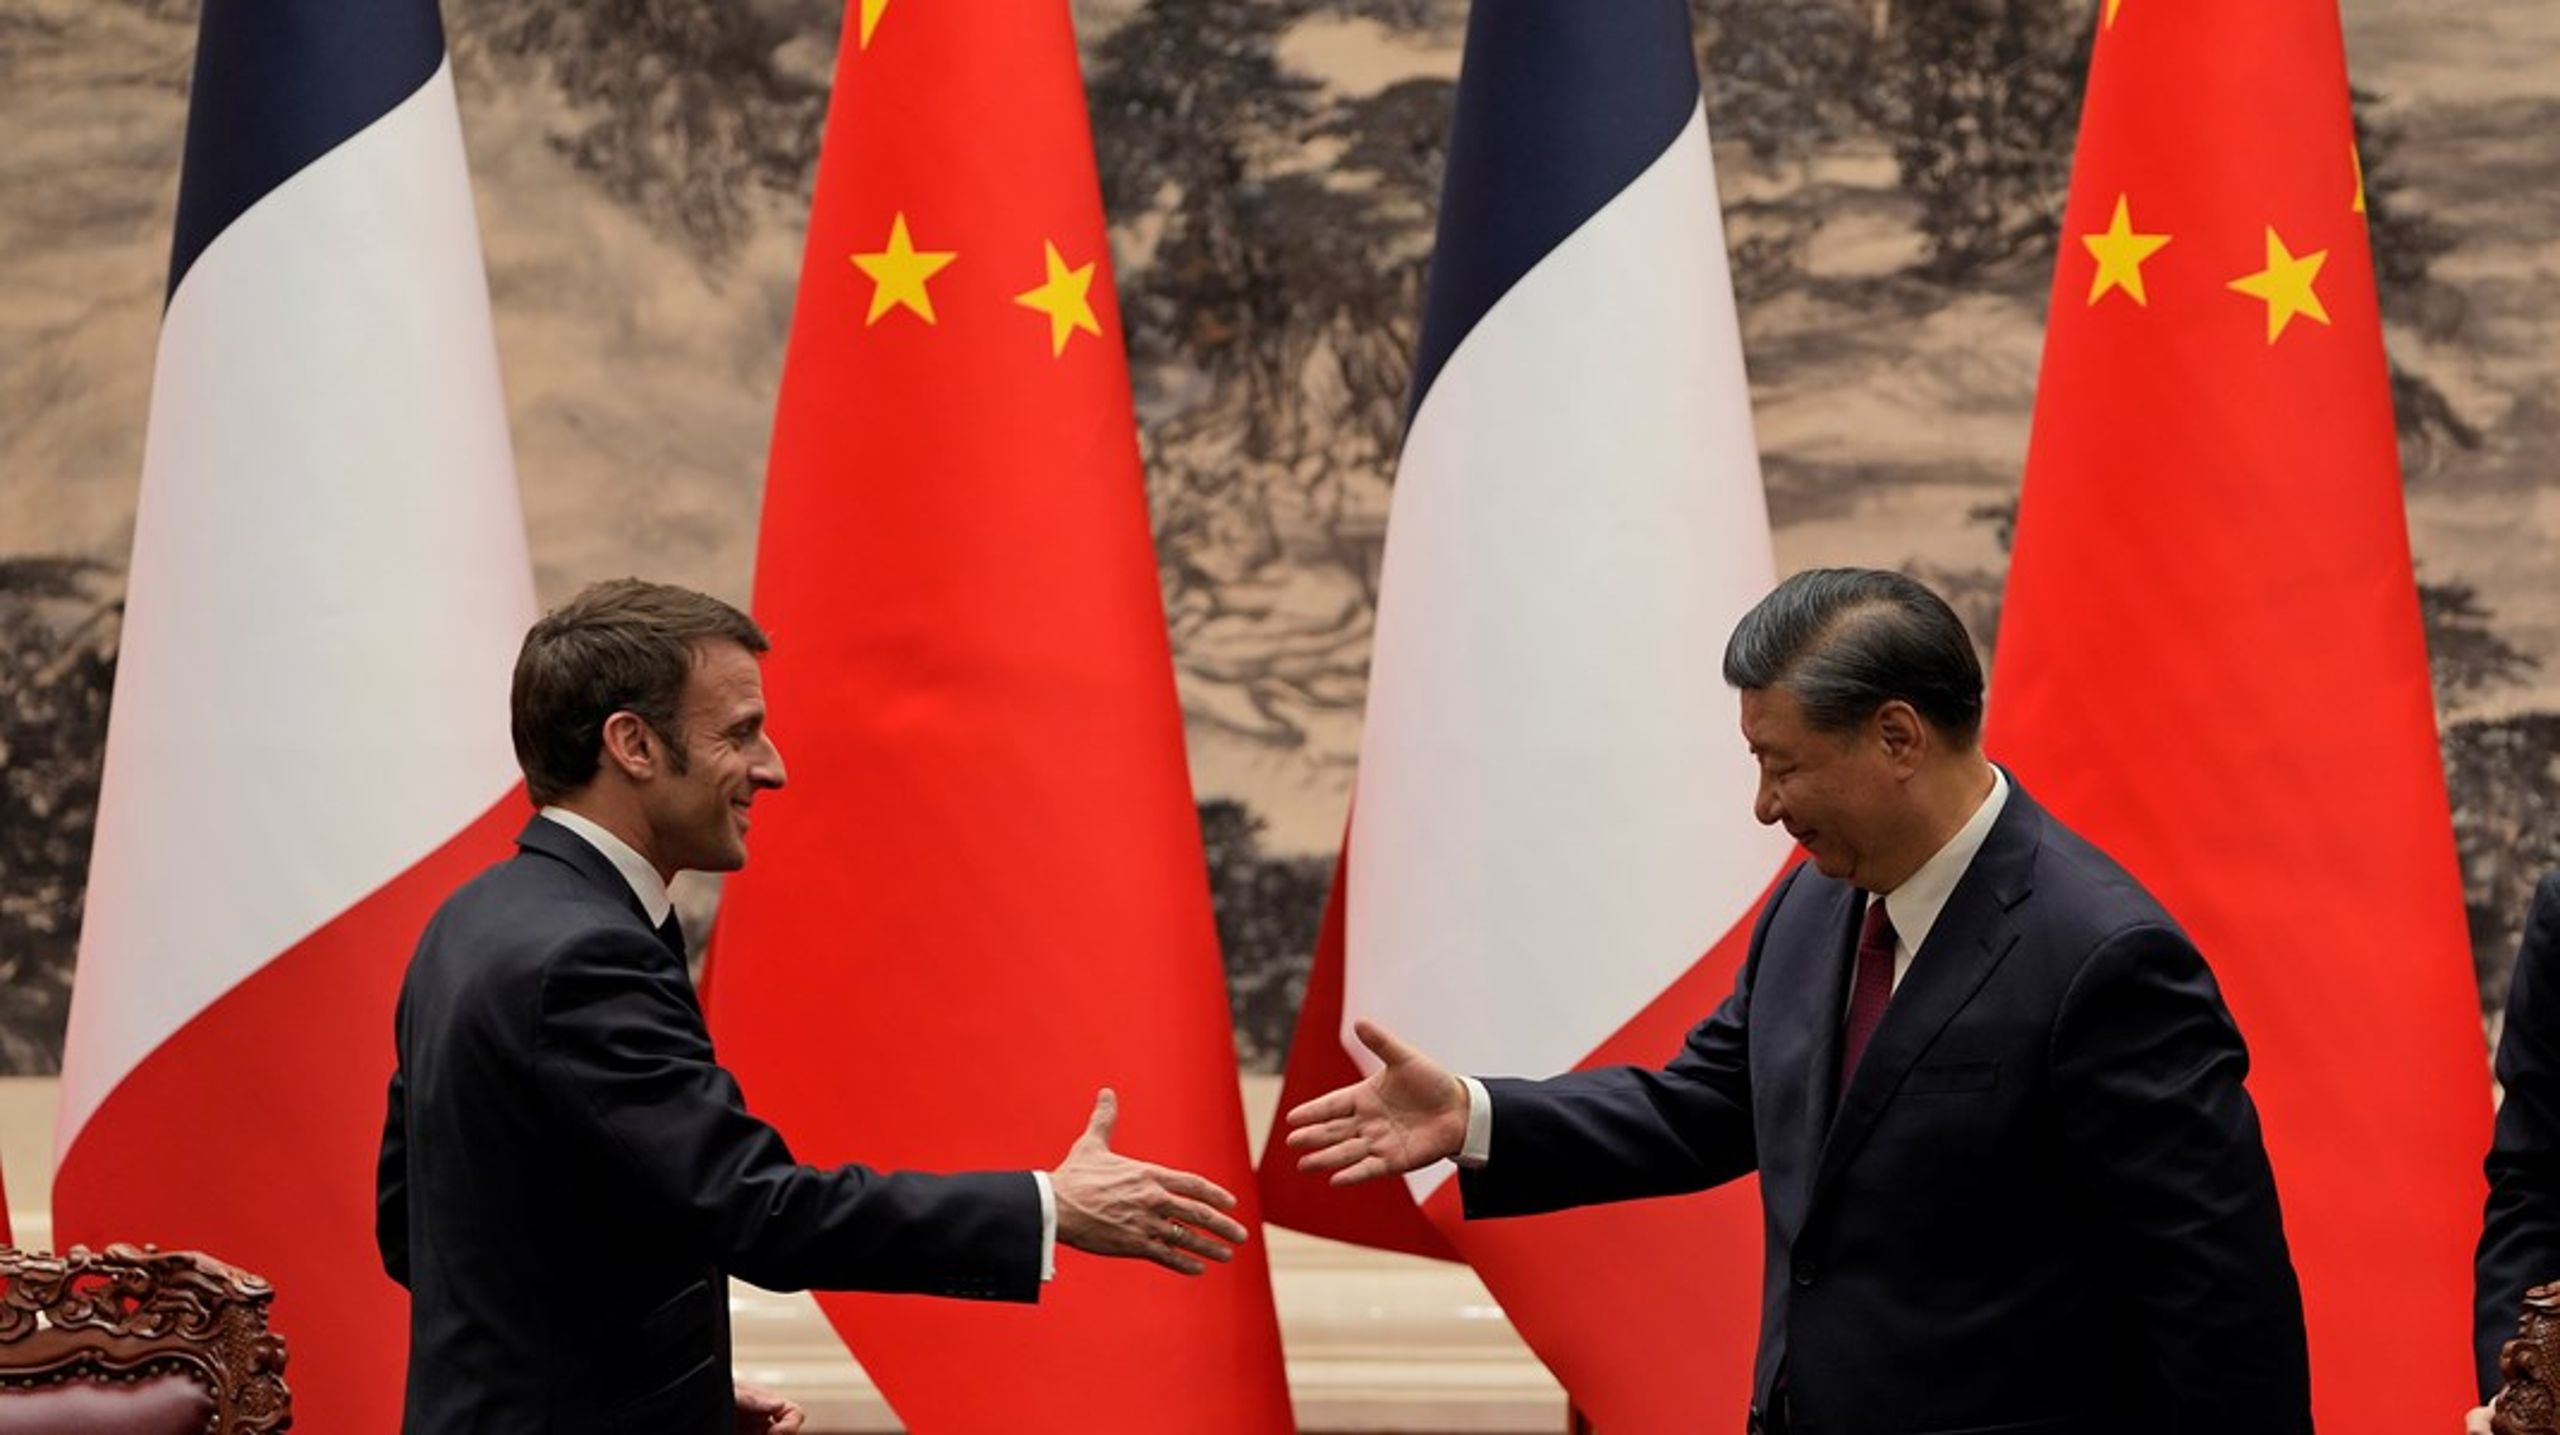 Det er ikke første gang, at den franske og den kinesiske præsident mødes. Men stemningen mellem de to kontinenter er ikke blevet bedre siden sidst.